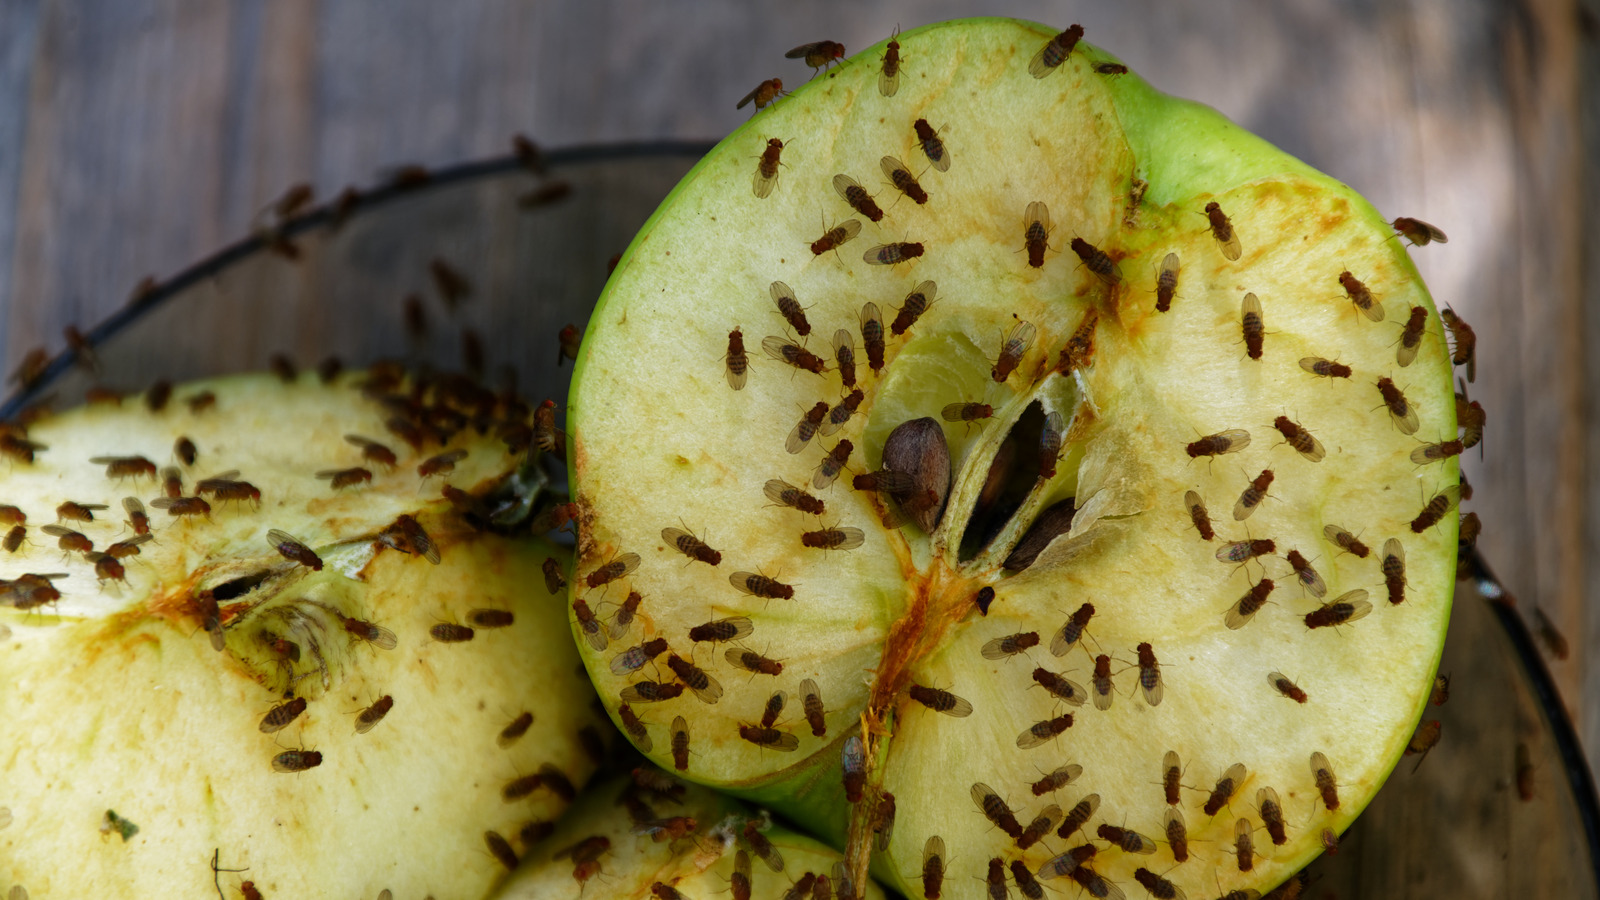 Get rid of fruit flies with vinegar